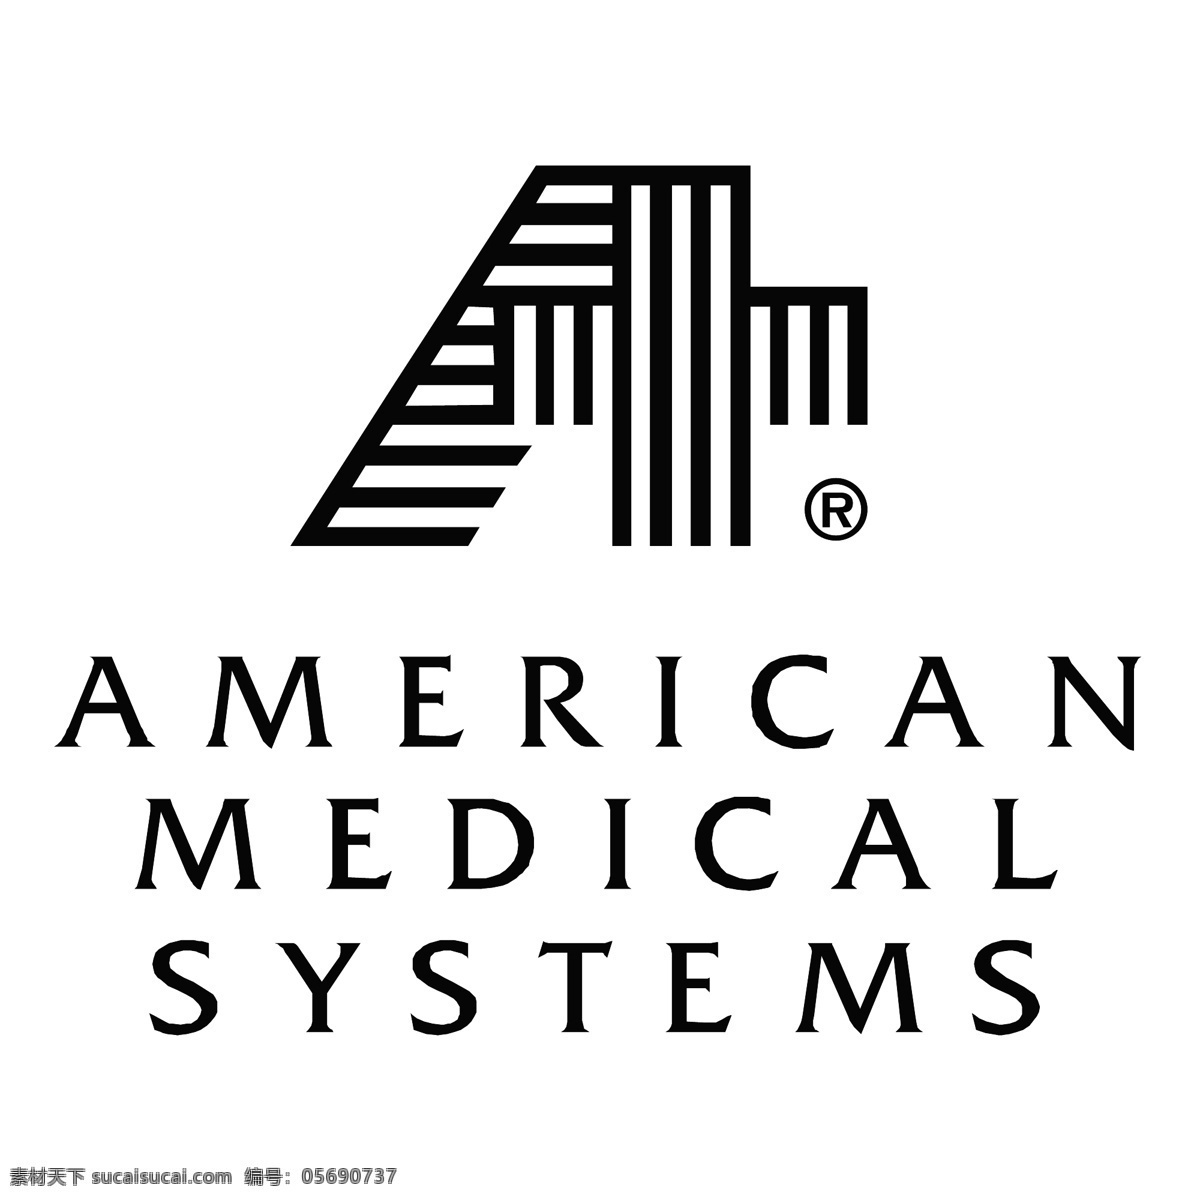 美国医疗系统 美国 美国医学 医学 医疗系统 系统 矢量美国医学 美国医学向量 向量 医疗 矢量美国系统 美国系统 自由的美国 美国的矢量 矢量 艺术 自由 白色